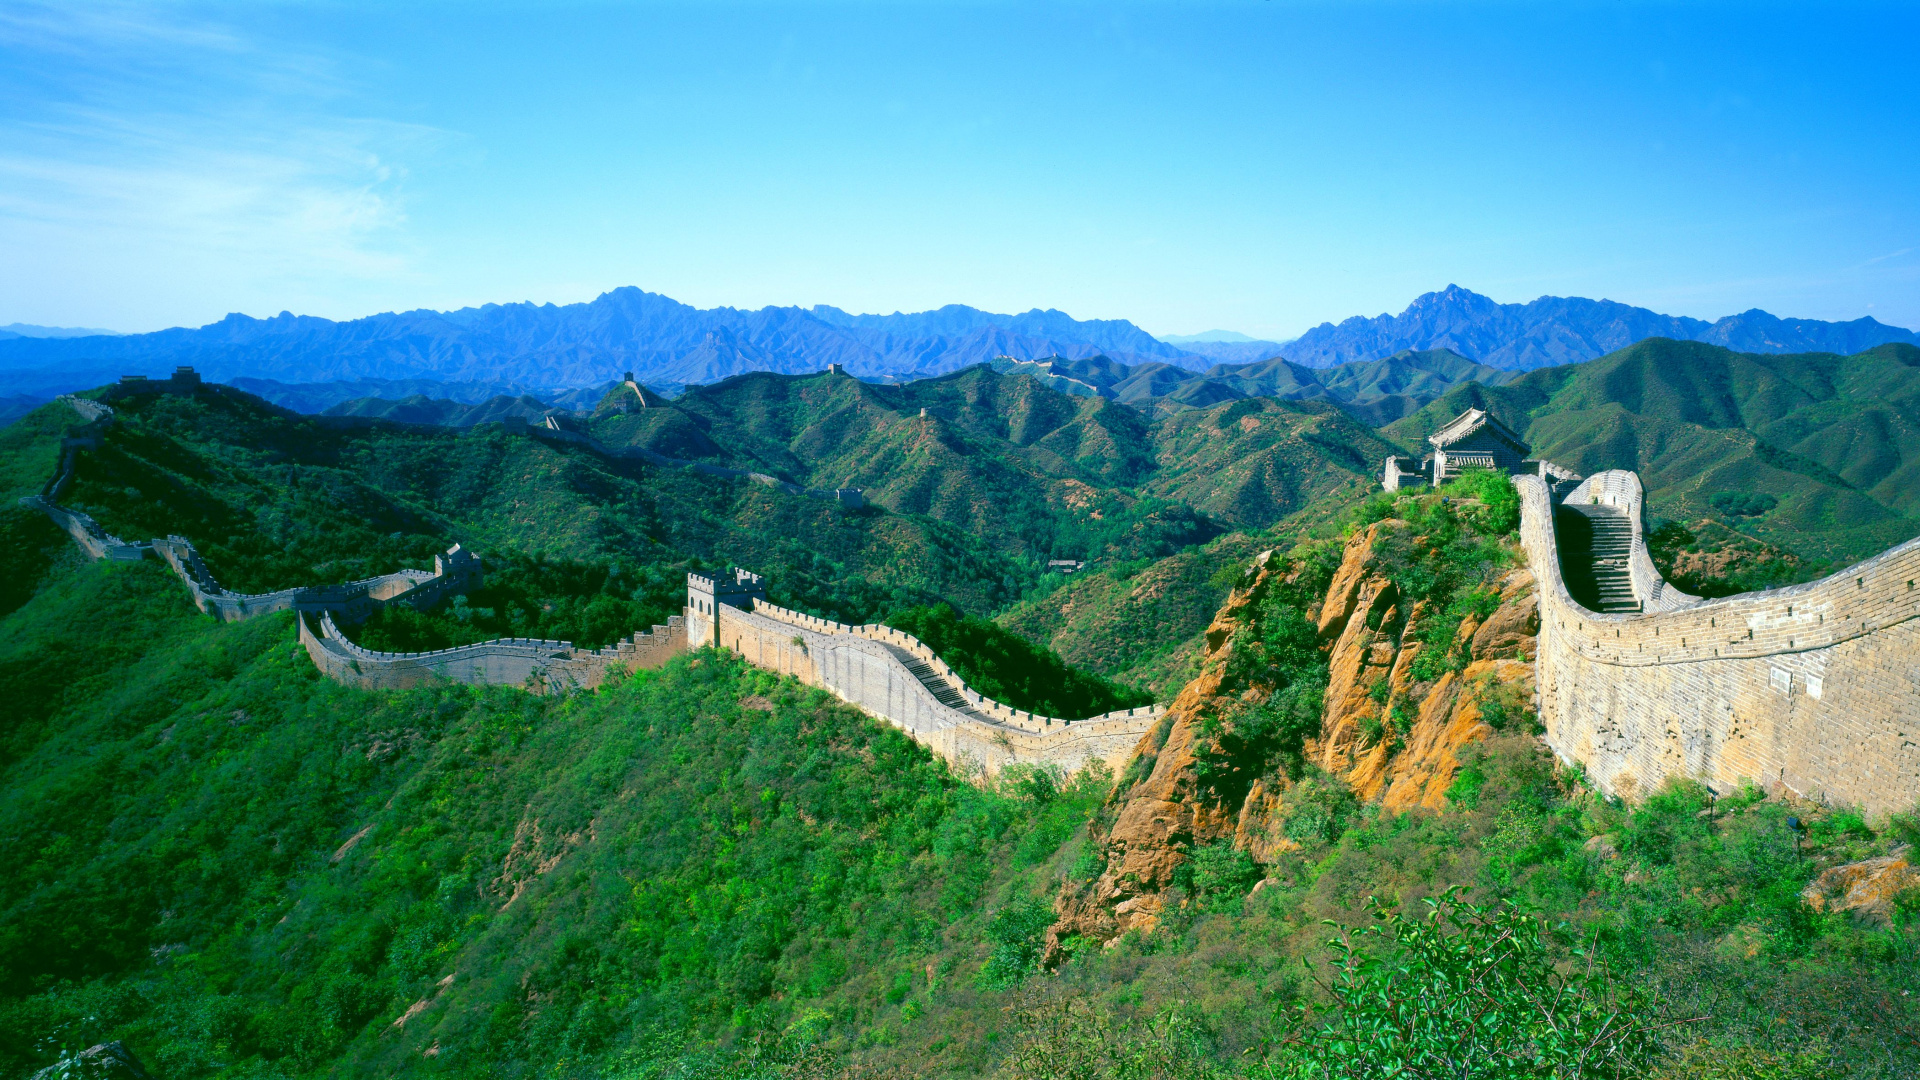 中国的长城, 慕田峪, 多山的地貌, 山站, 山脉 壁纸 1920x1080 允许